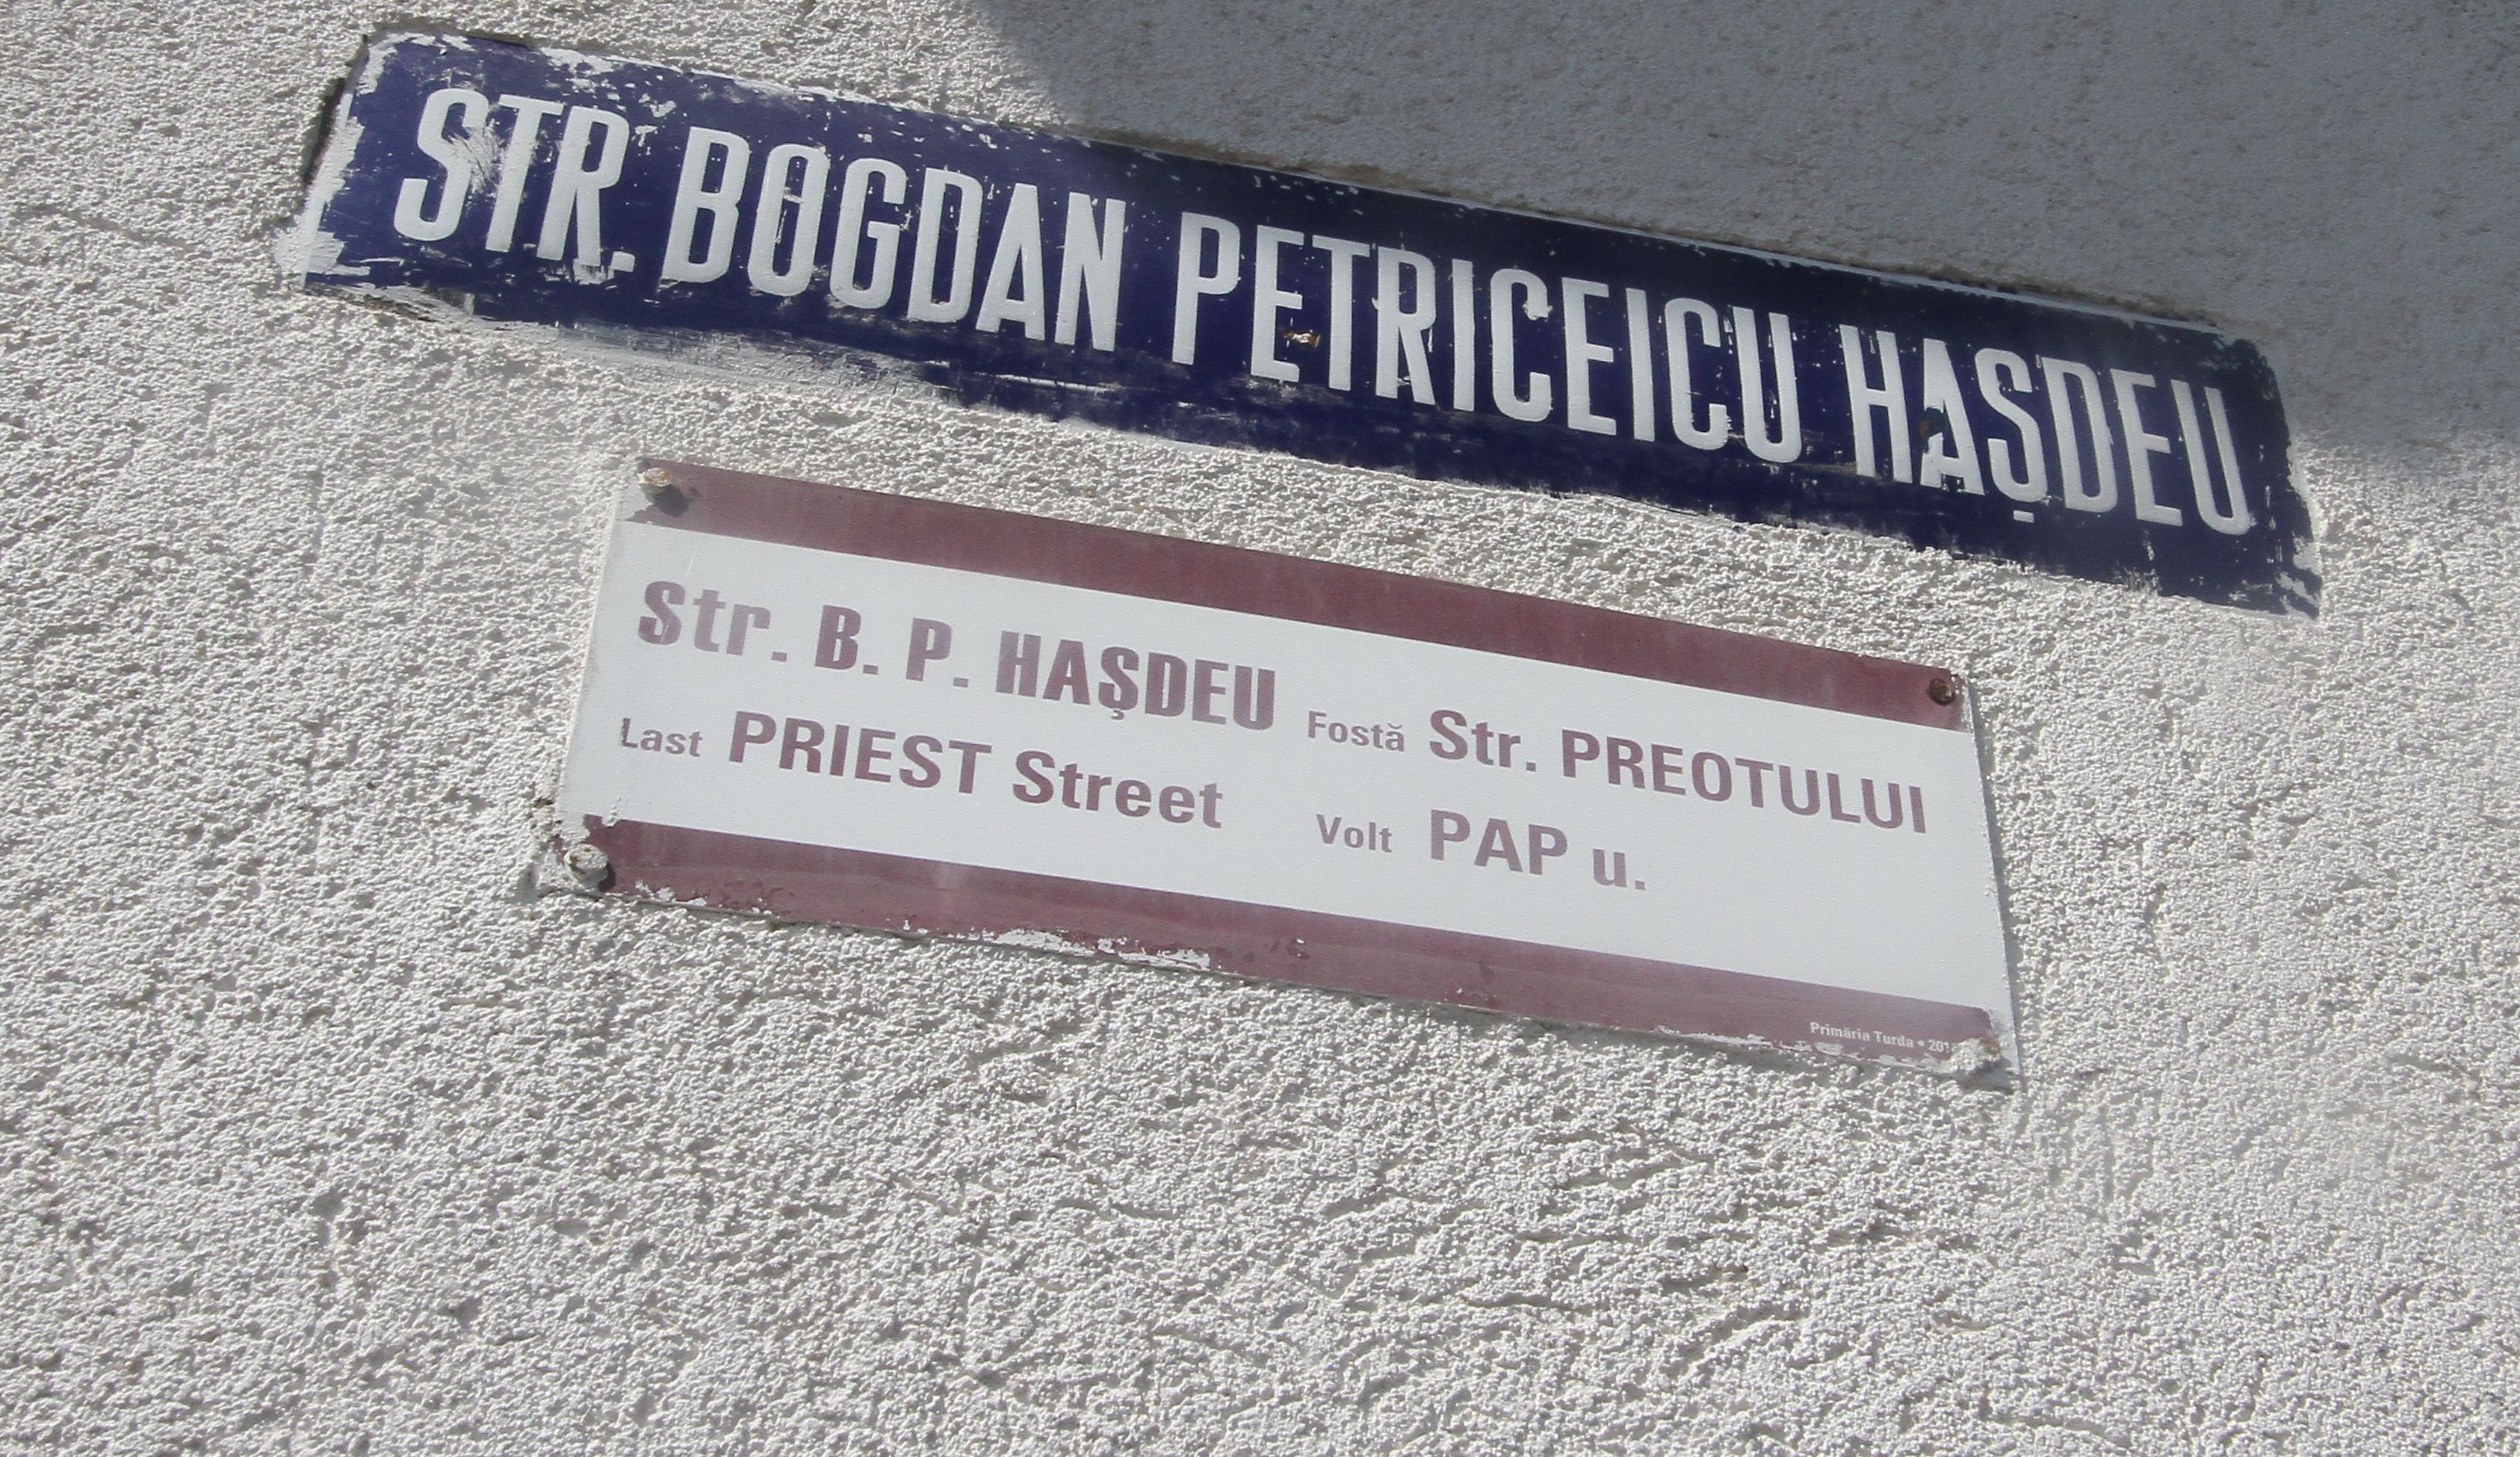 Tordai példa - a hivatalos elnevezés alatt a történelmi utcanevet is feltüntették három nyelven